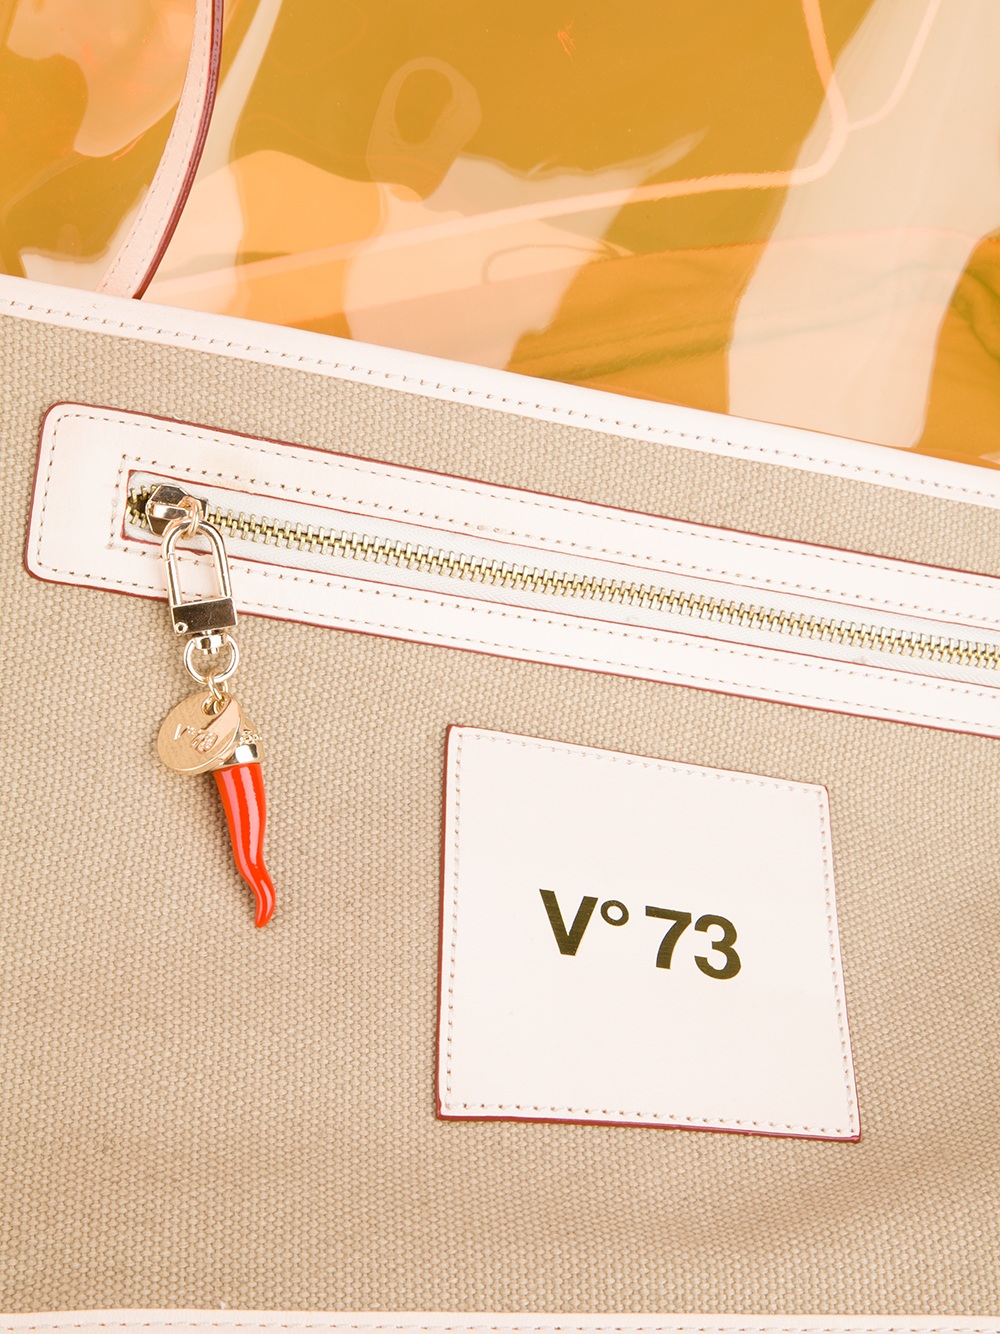 V73 Clear Bag in Orange